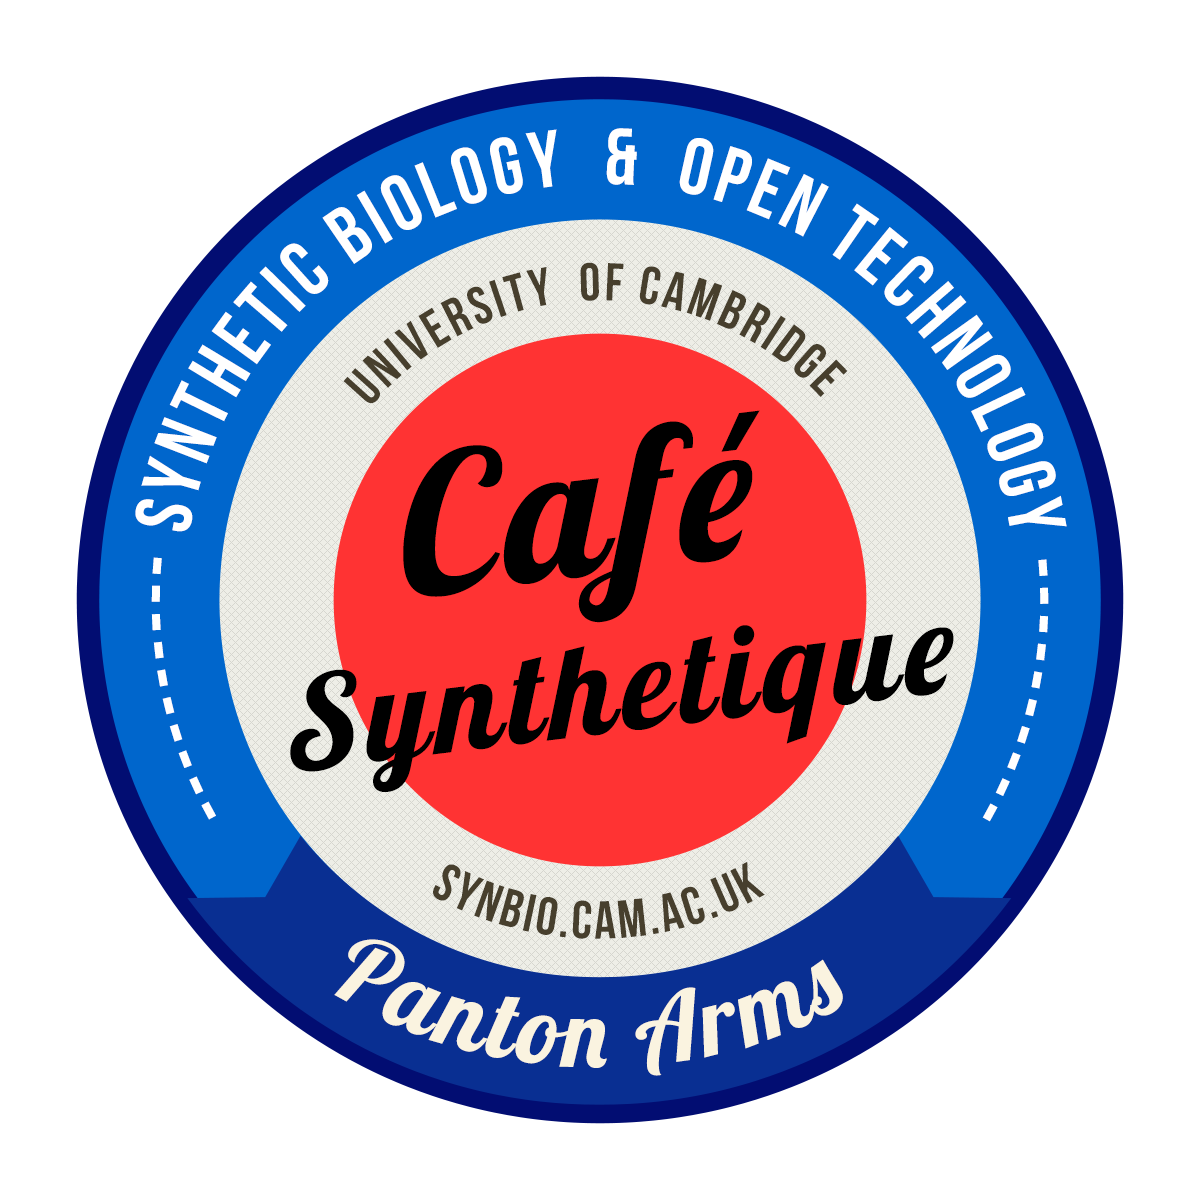 CafeSynthetique High res